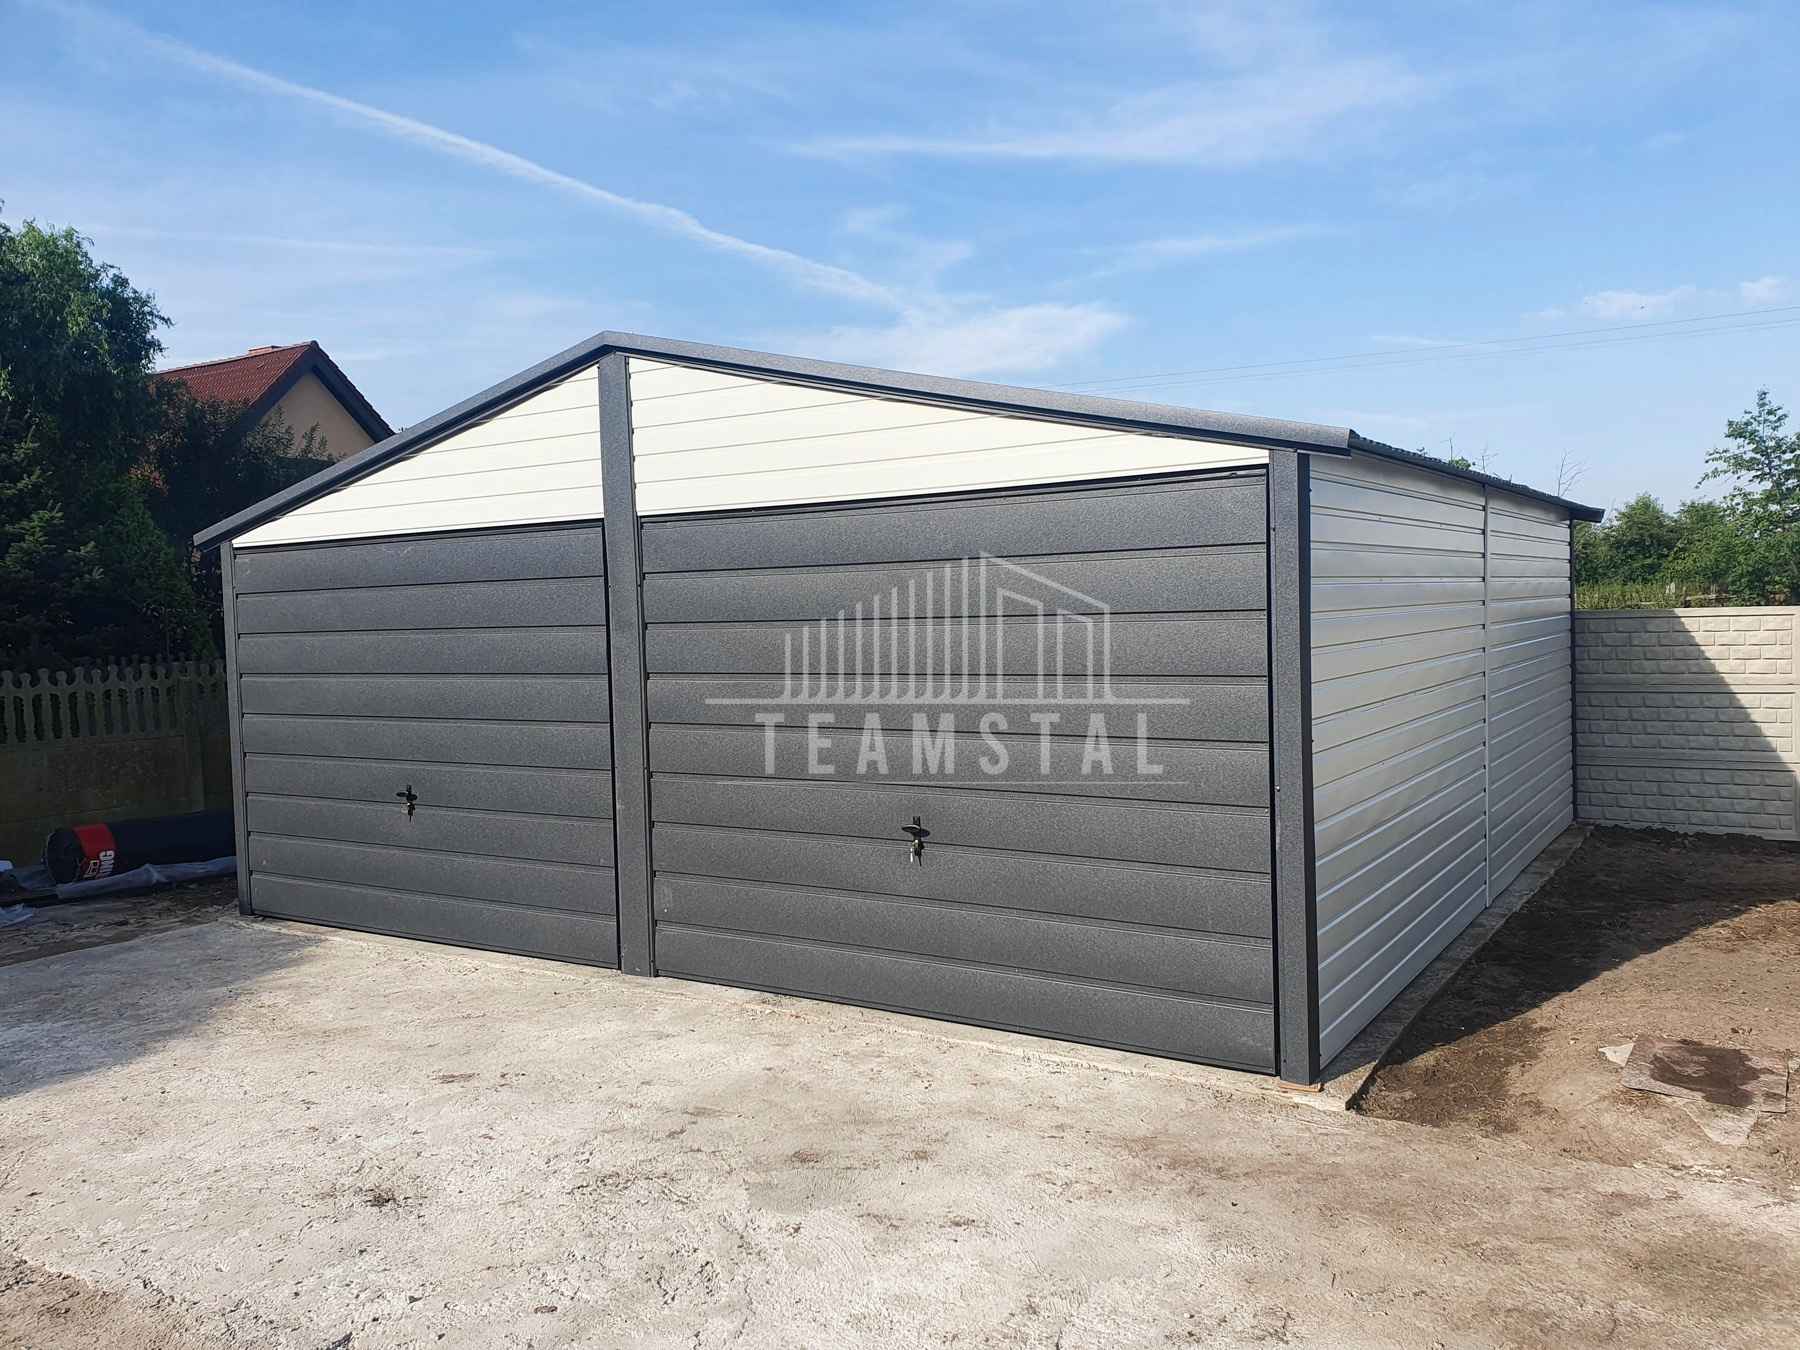 Garaż Blaszany 6x6 - 2x Brama - Antracyt + Biały dach dwuspadowy TS541 Żnin - zdjęcie 2